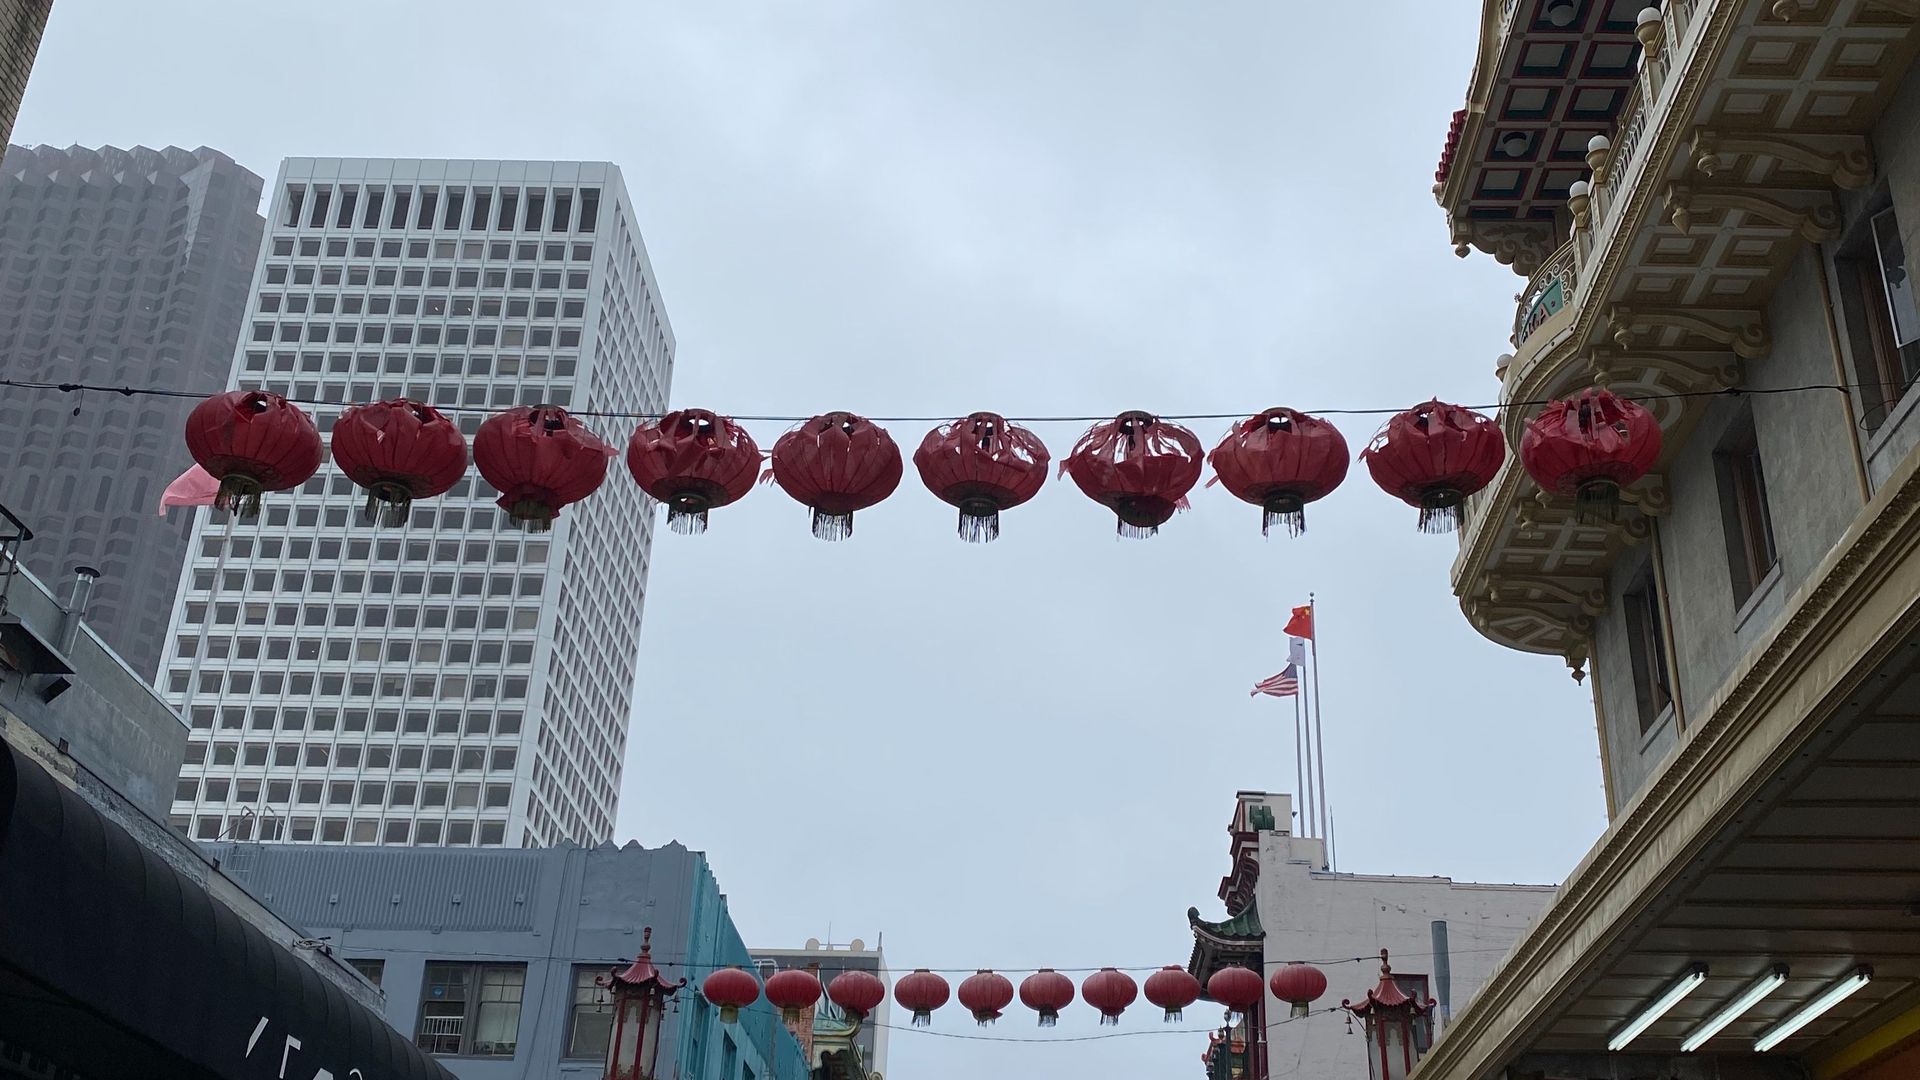 tattered hanging red lanterns